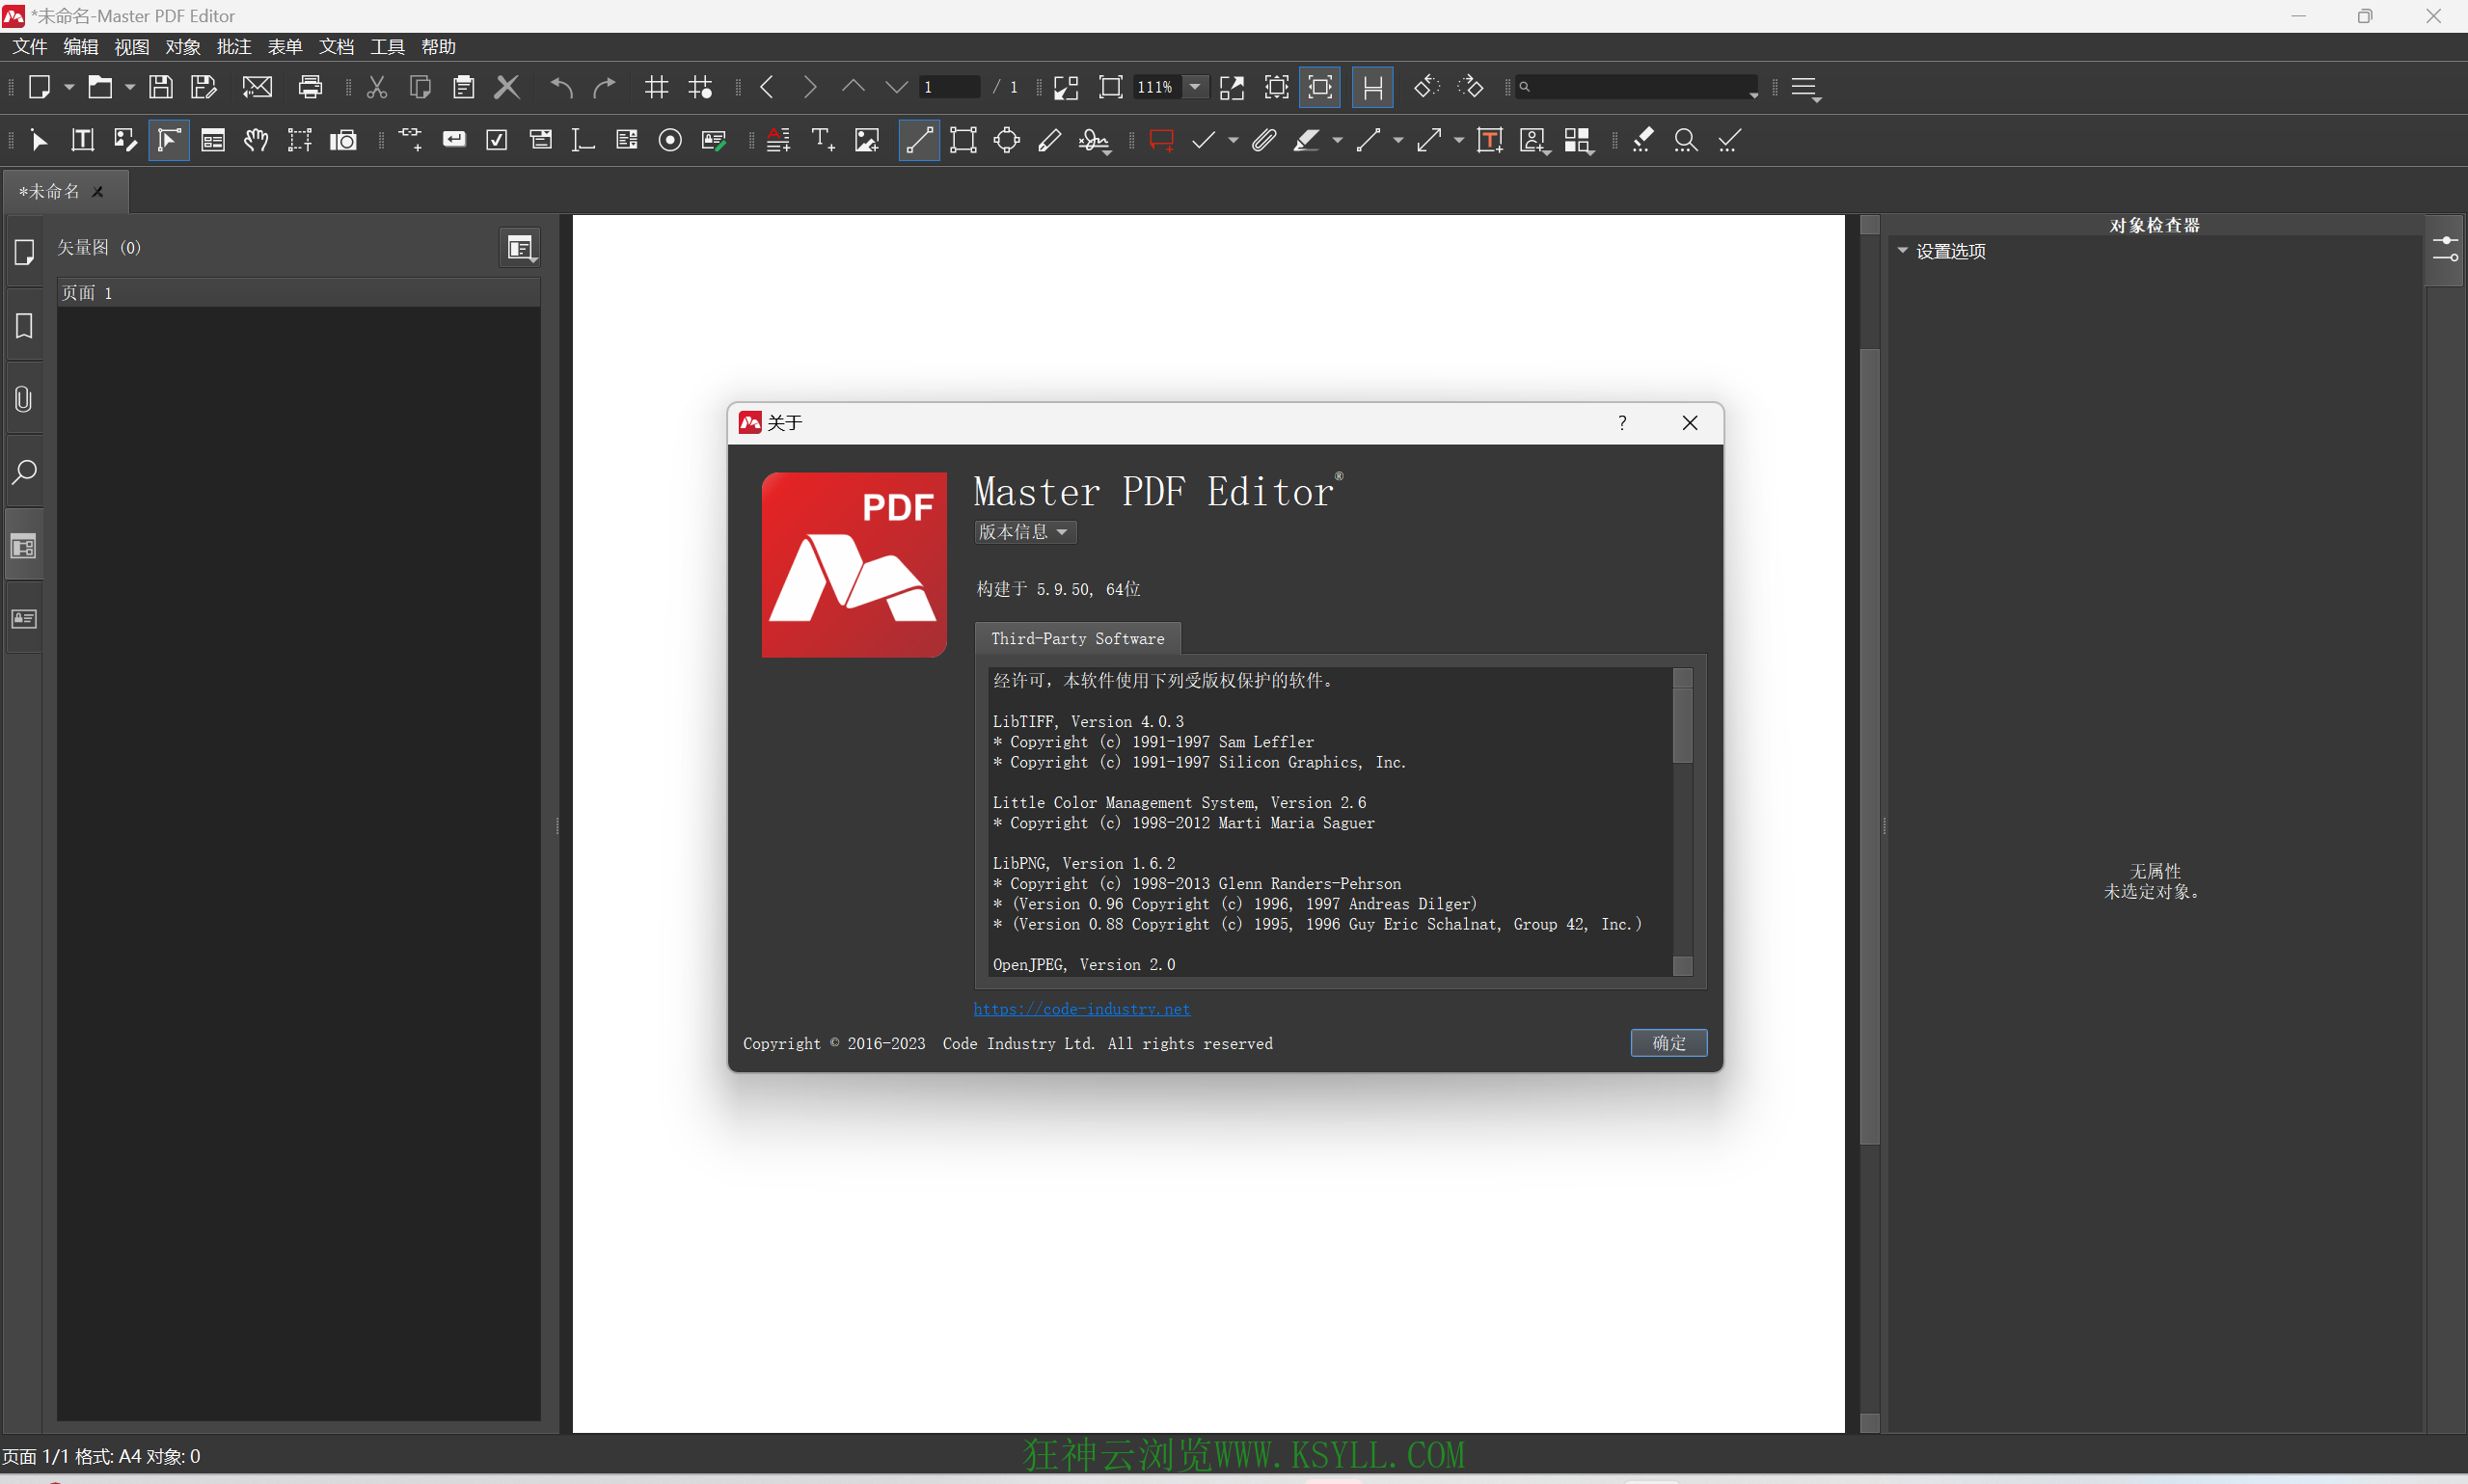 【分享】Master PDF Editor v5.9.50解锁版插图1